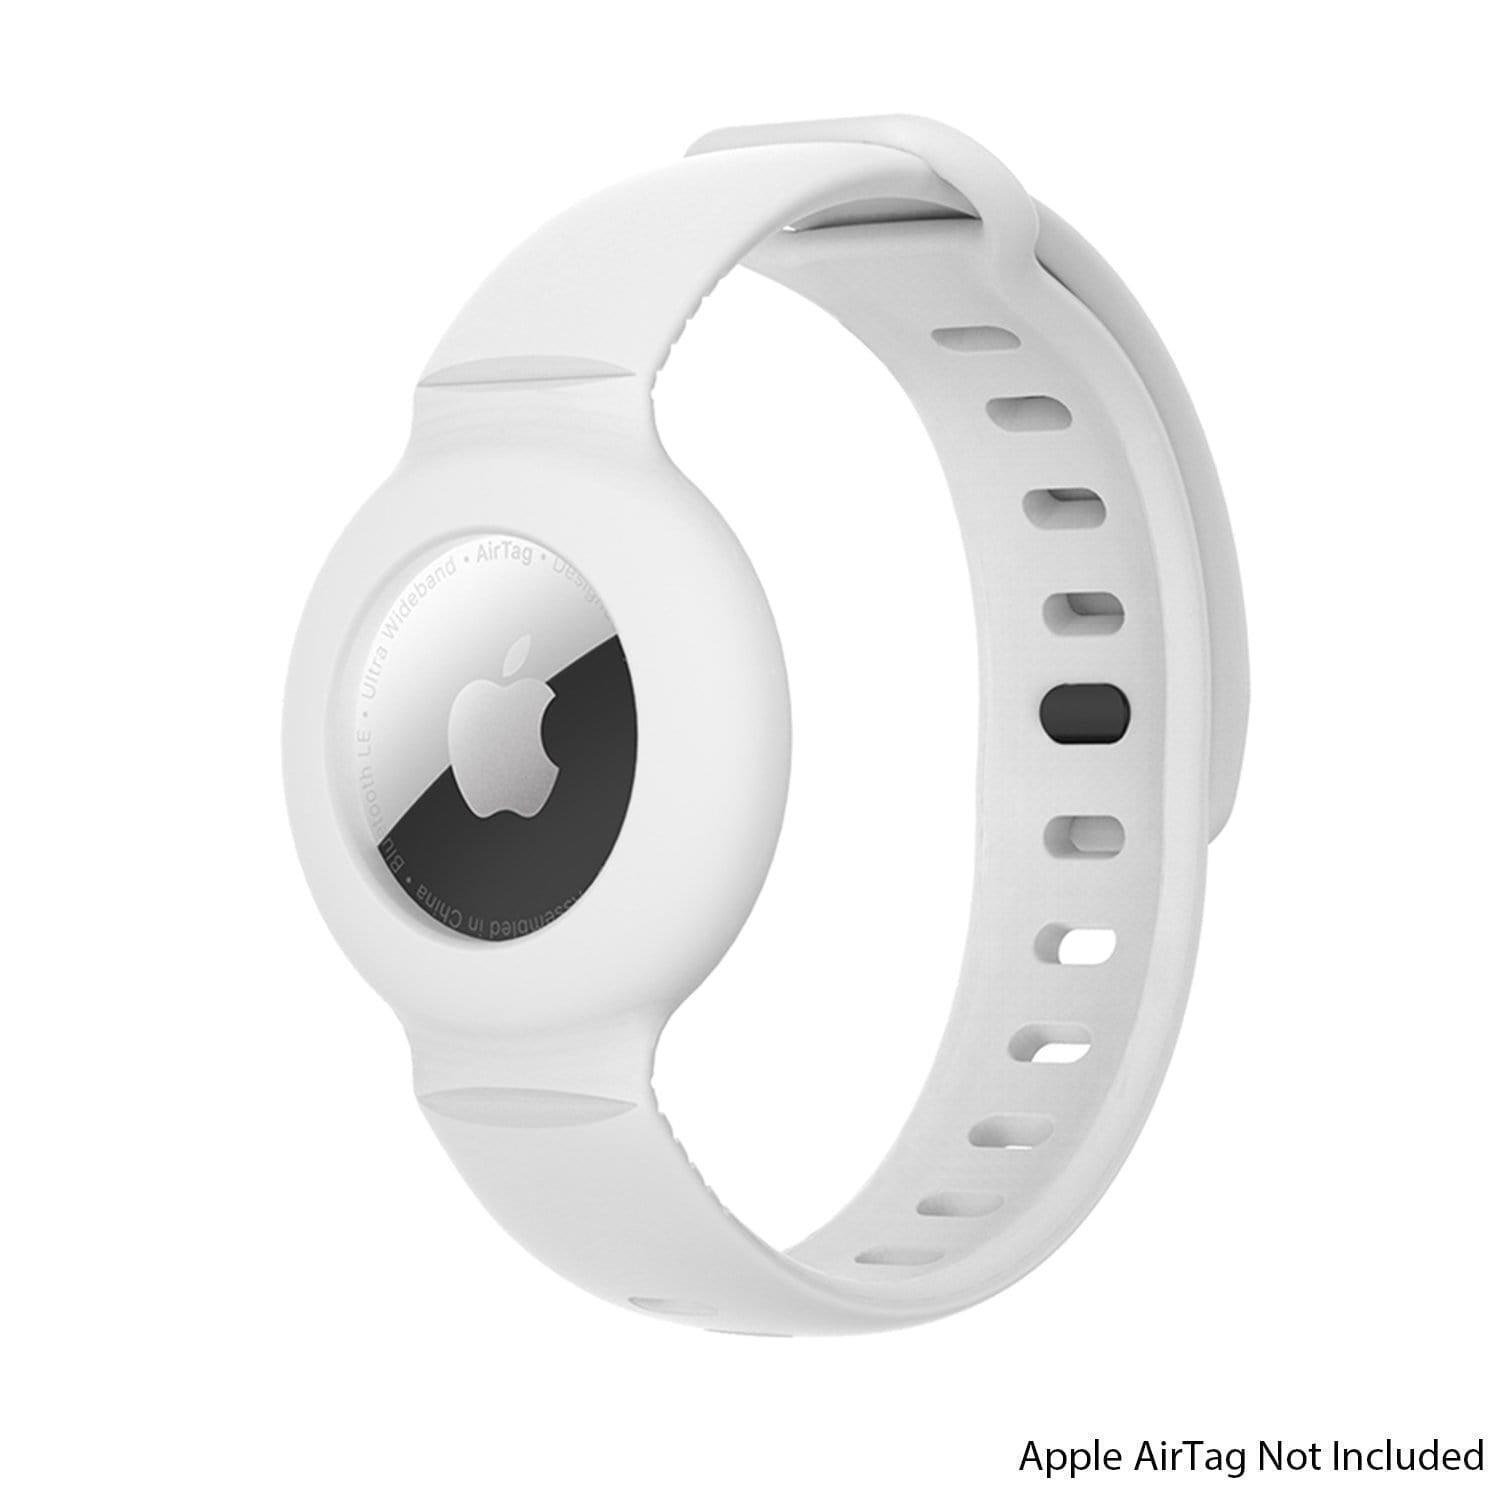 SaharaCase - Silicone WristBand for Apple AirTag - White/